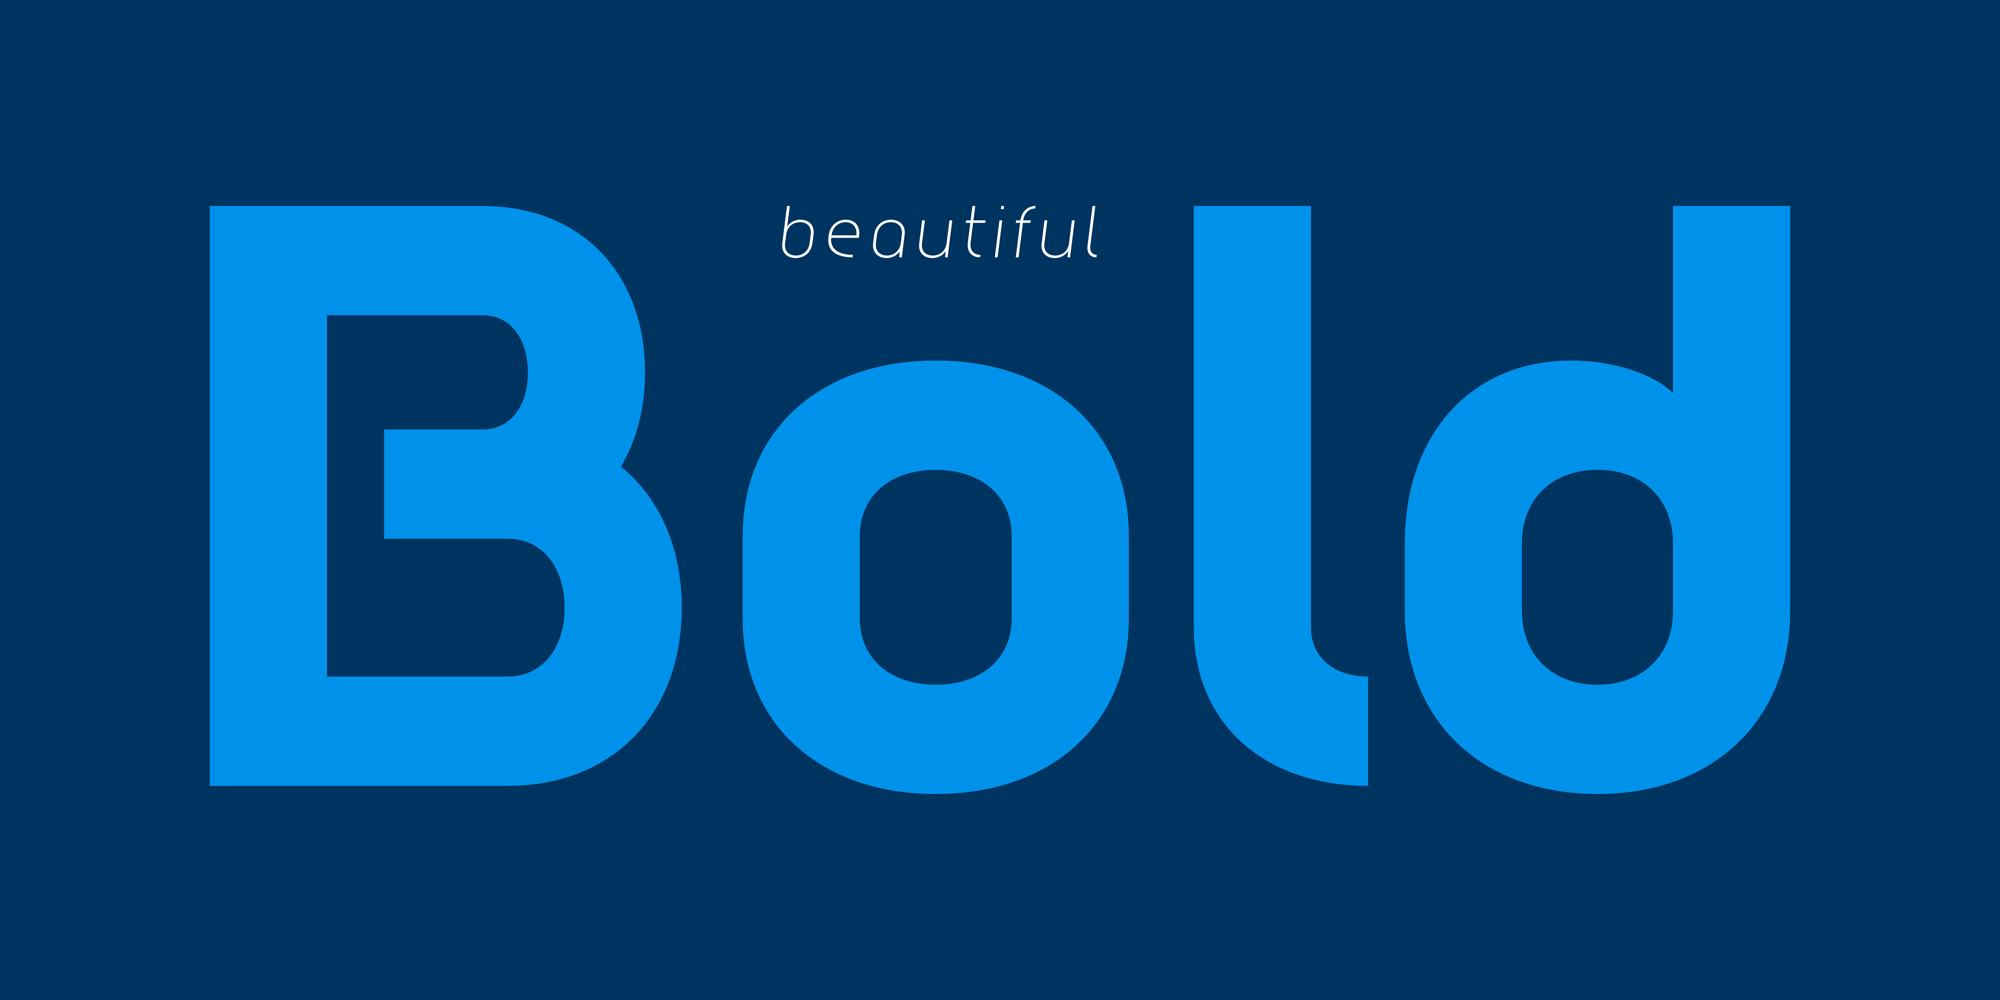 Bilbao Sans Typeface. Beautiful Bold.